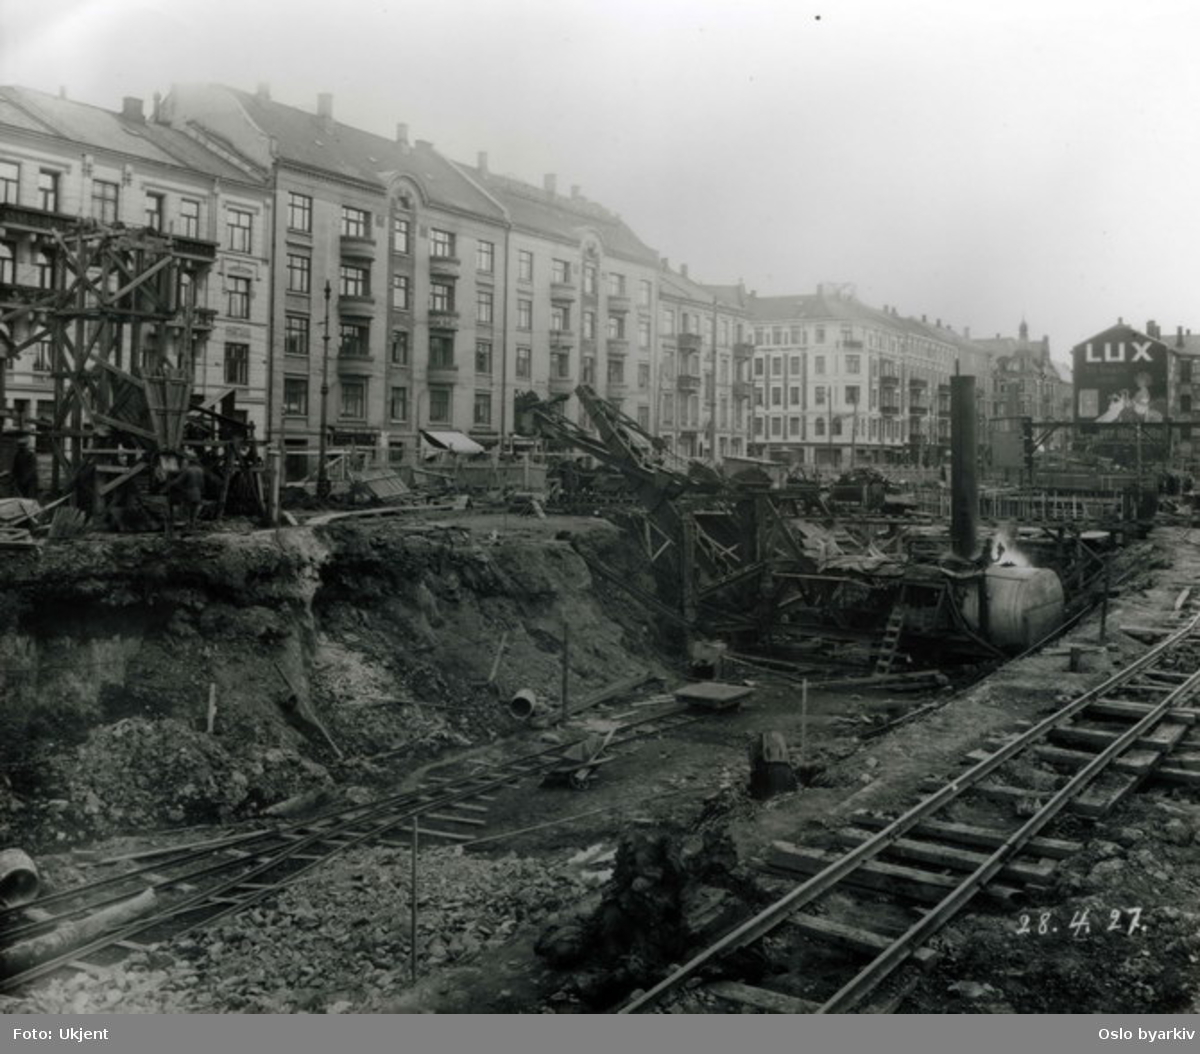 Anleggsarbeide på Majorstuen ved utgravning av tunnel mellom Majorstuen og Nationaltheateret for Holmenkollbanen. Valkyriegata til venstre i bildet. Reklame for Lux sepe på tverrvegg. Fotografiet er merket med datoen 28.4. 1927.